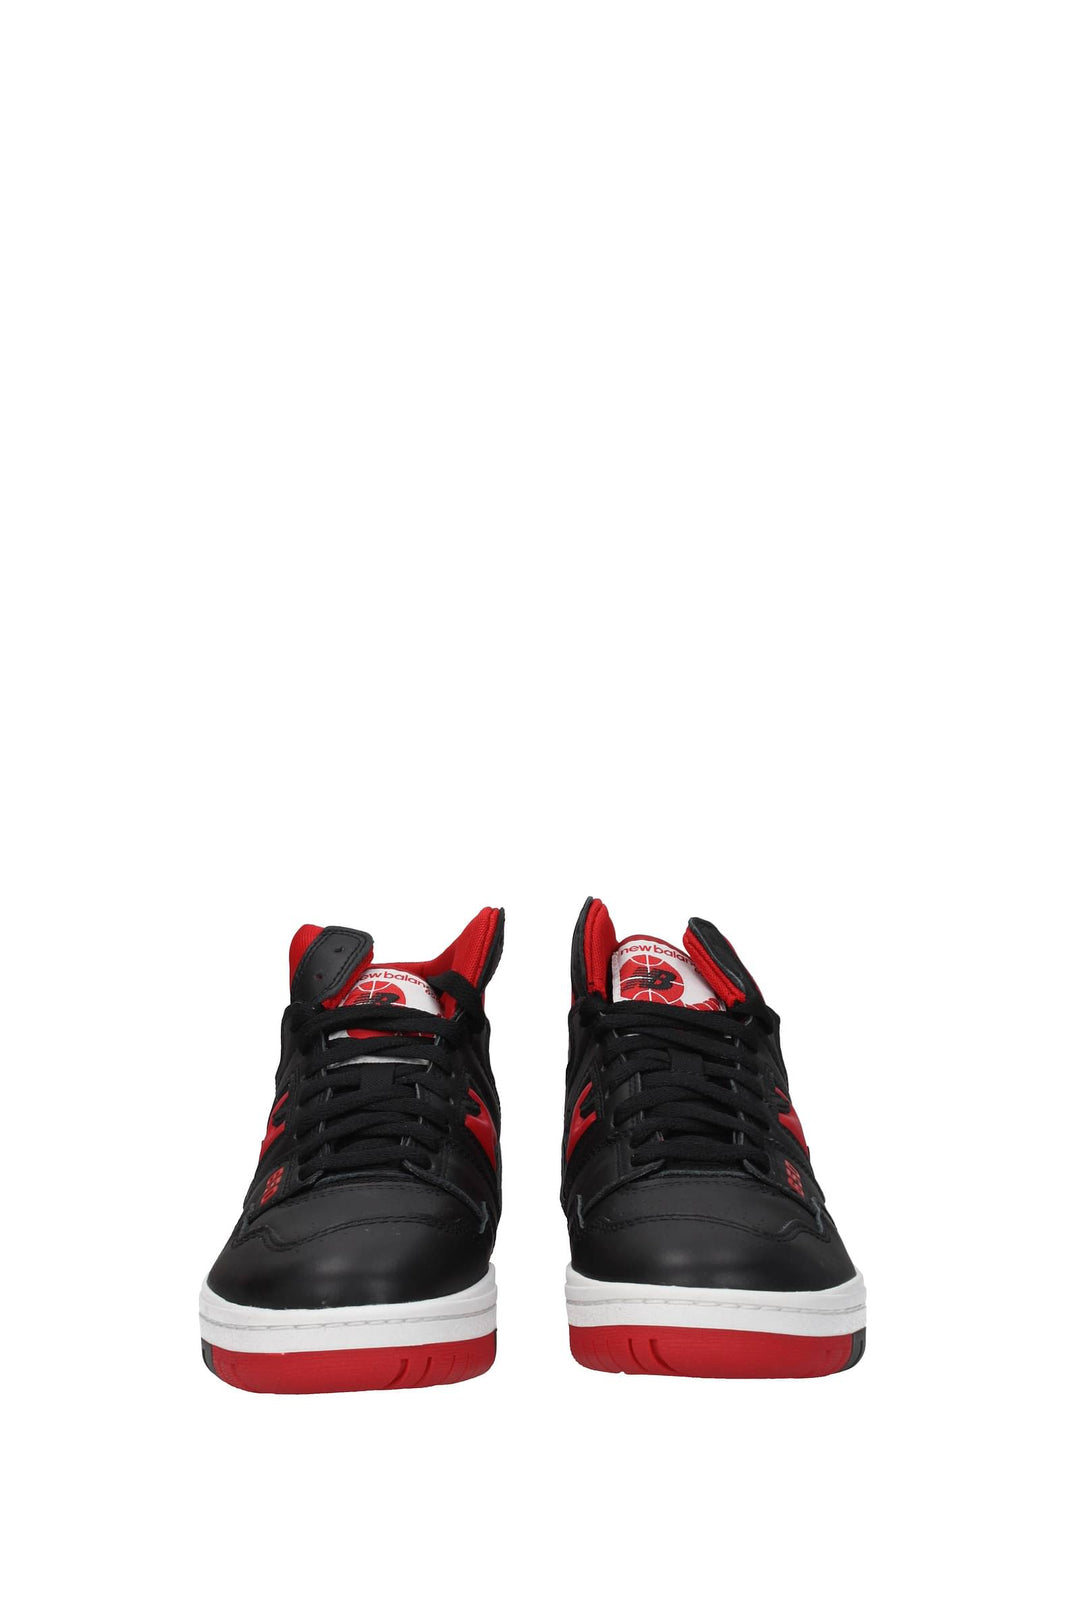 Sneakers 650 Pelle Nero Rosso - New Balance - Uomo